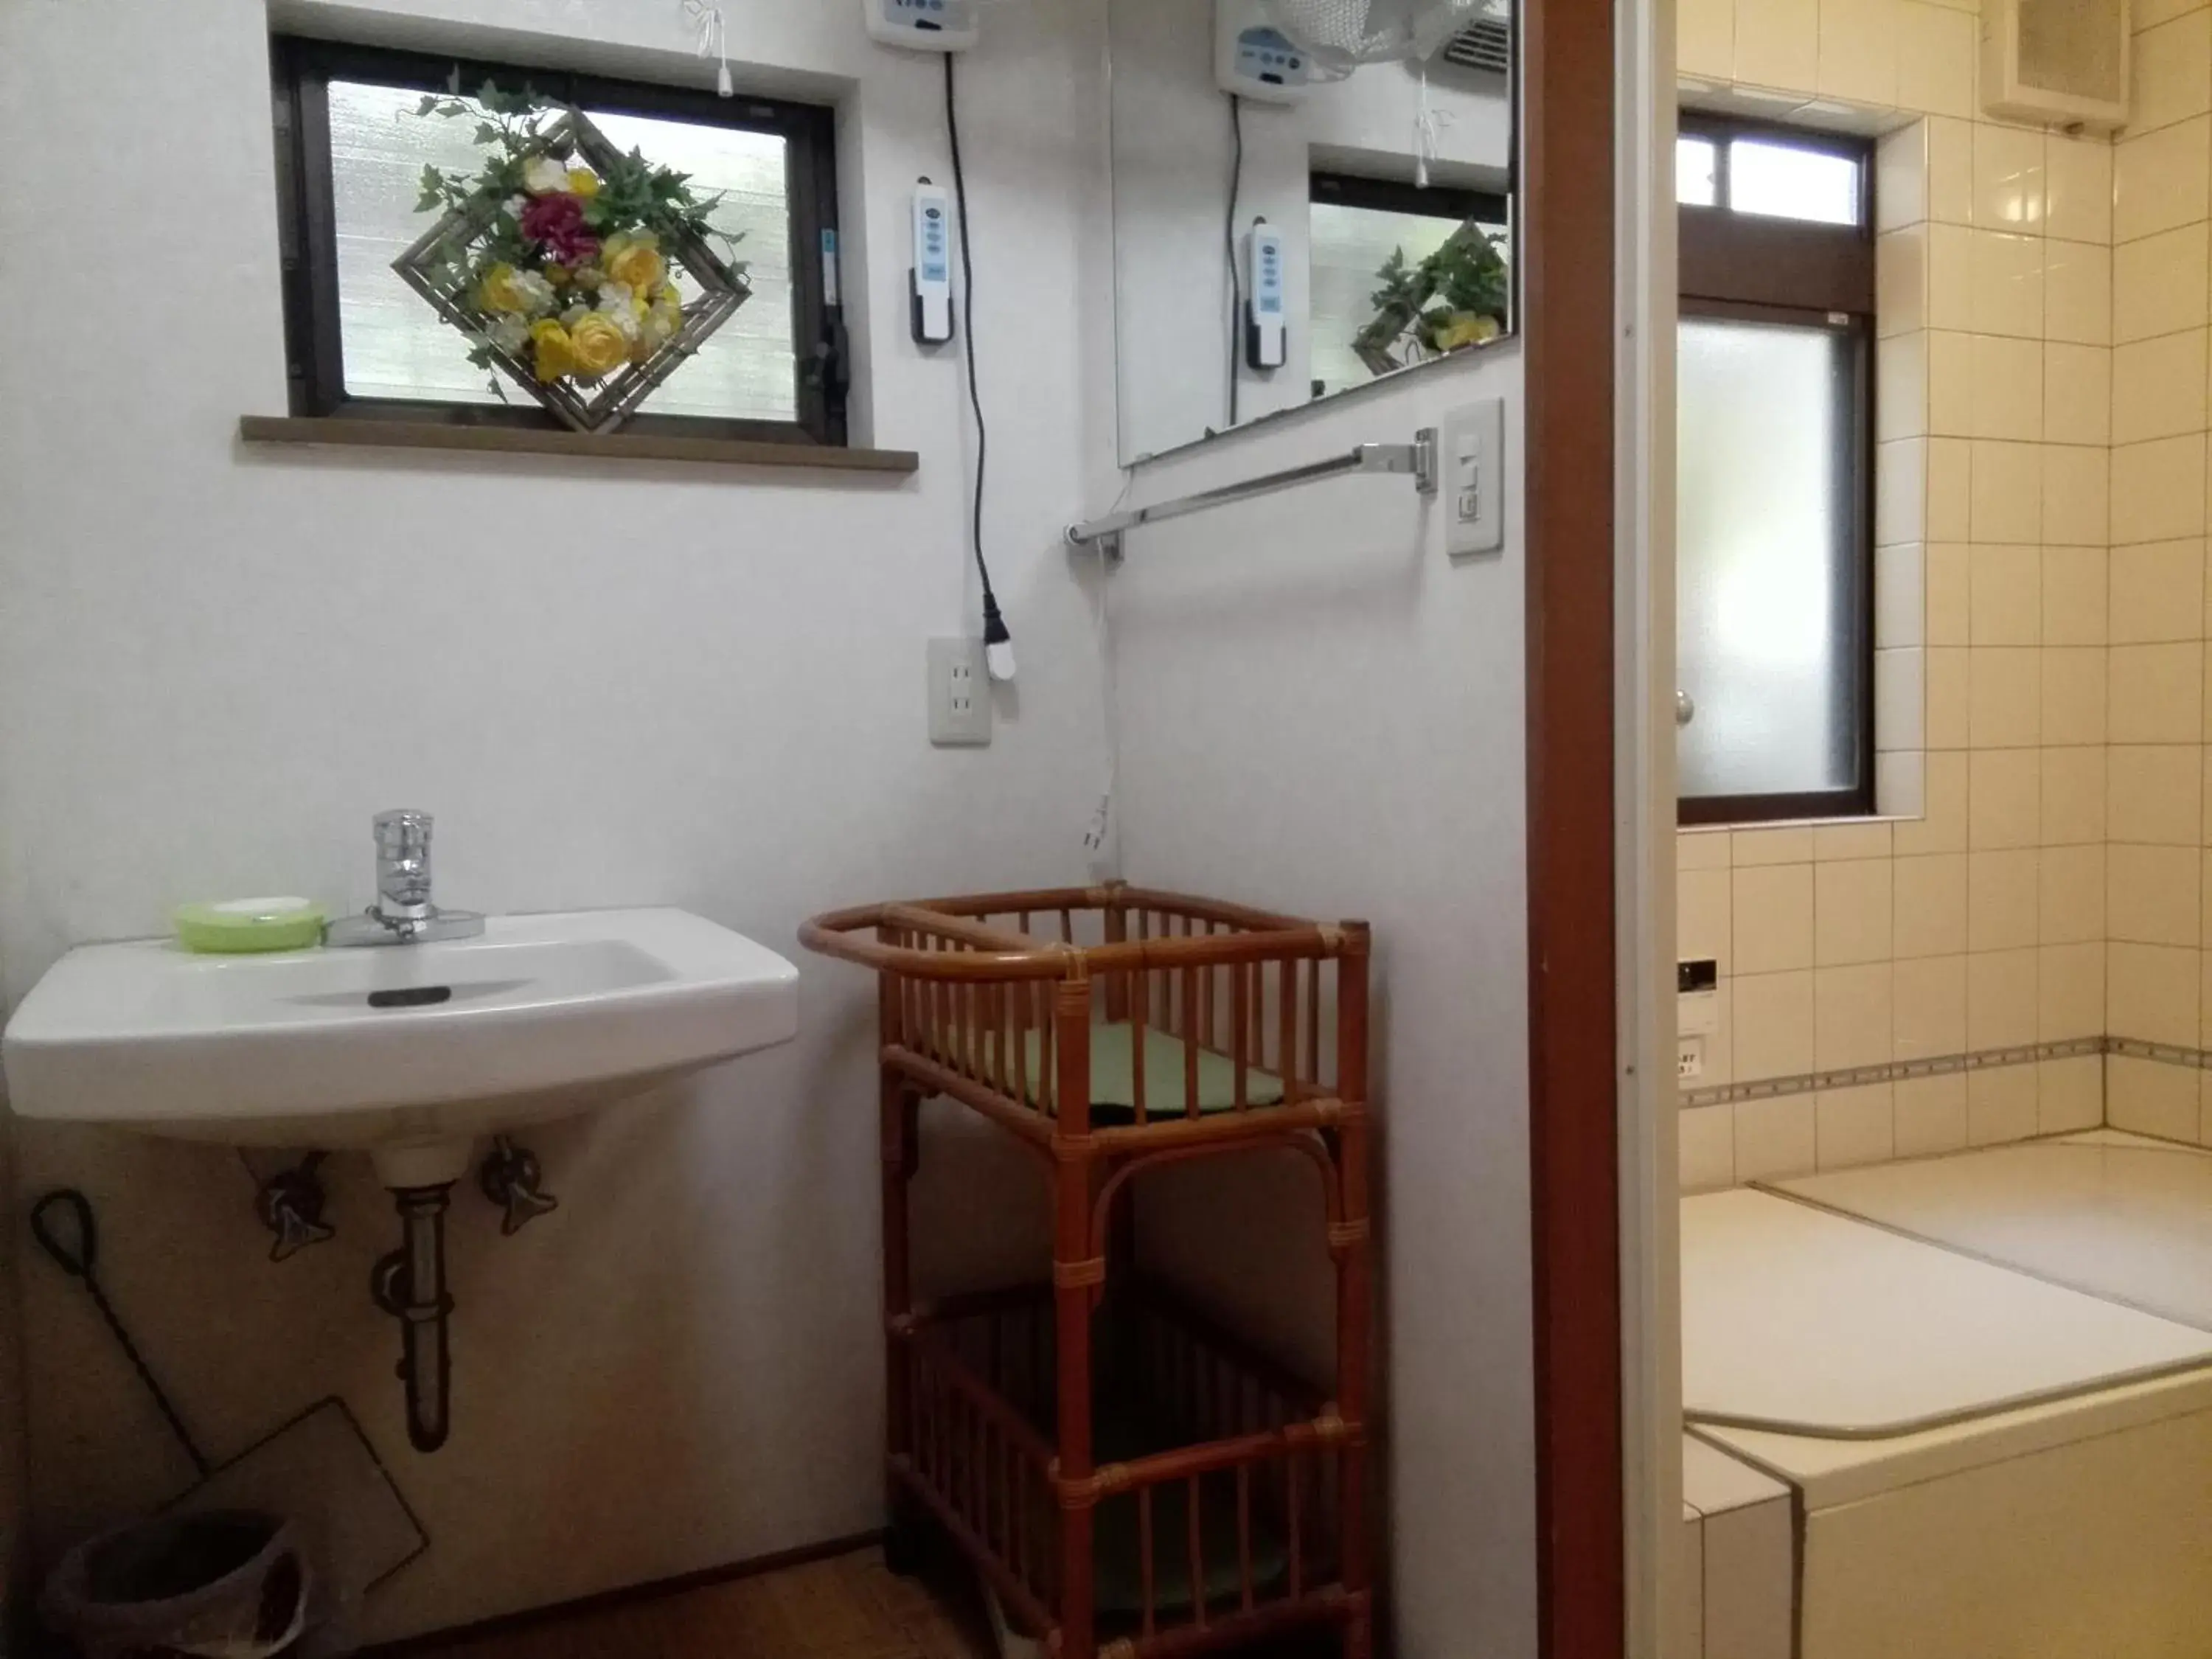 Area and facilities, Bathroom in Ryokan Nakajimaya